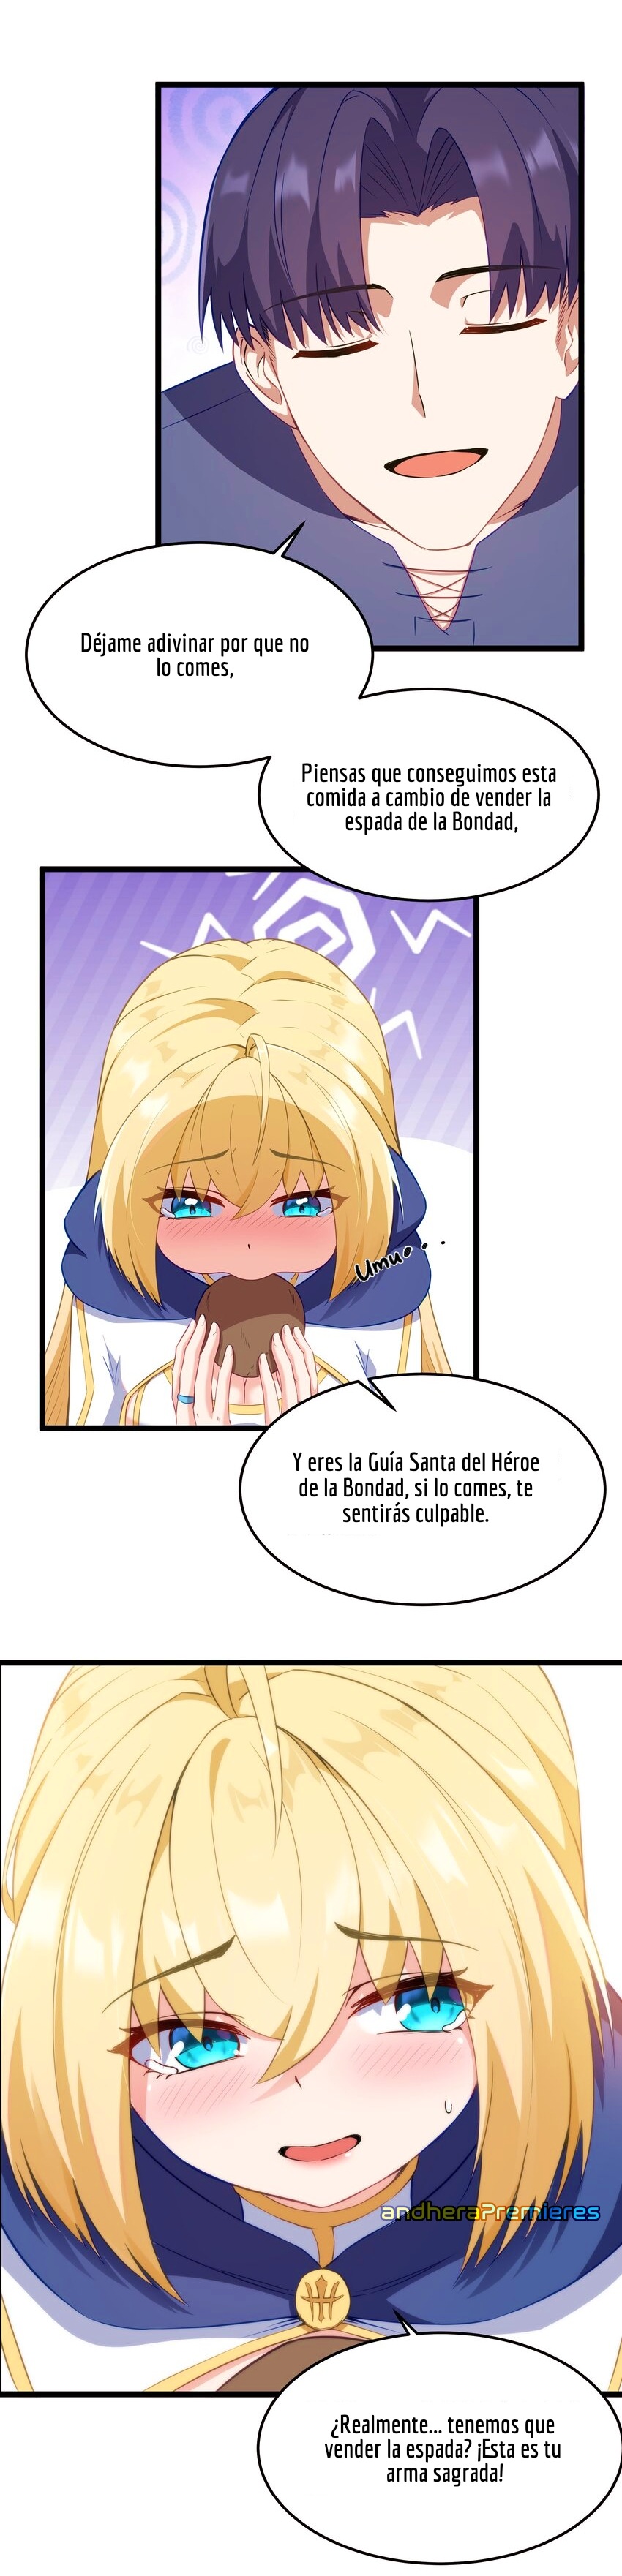 Manga El Héroe de la Avaricia Chapter 2 image number 29